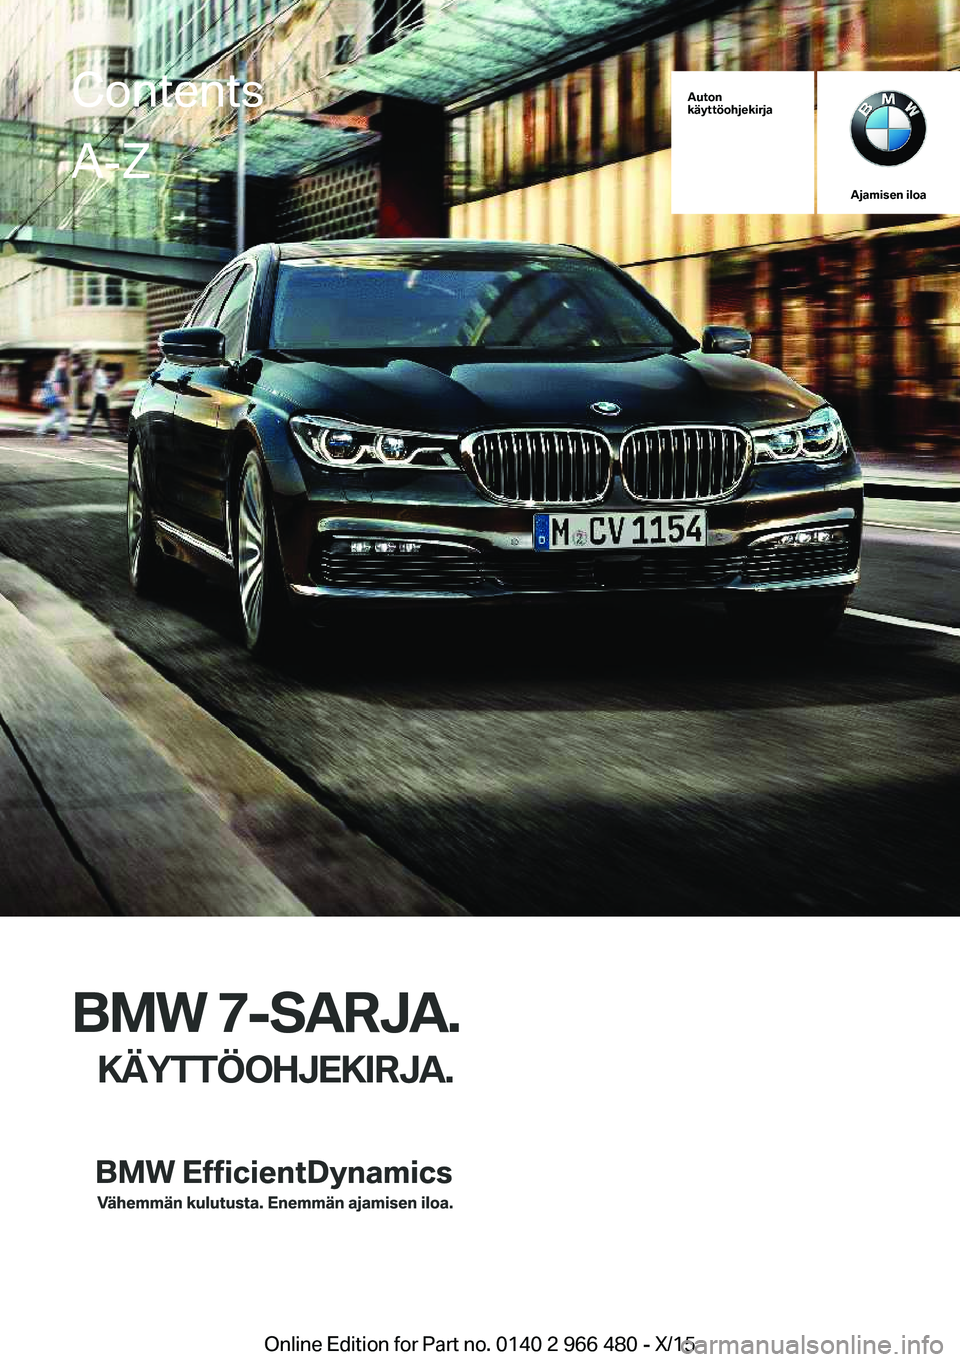 BMW 7 SERIES 2016  Omistajan Käsikirja (in Finnish) Auton
käyttöohjekirja
Ajamisen iloa
BMW 7-SARJA.
KÄYTTÖOHJEKIRJA.
ContentsA-Z
Online Edition for Part no. 0140 2 966 480 - X/15   